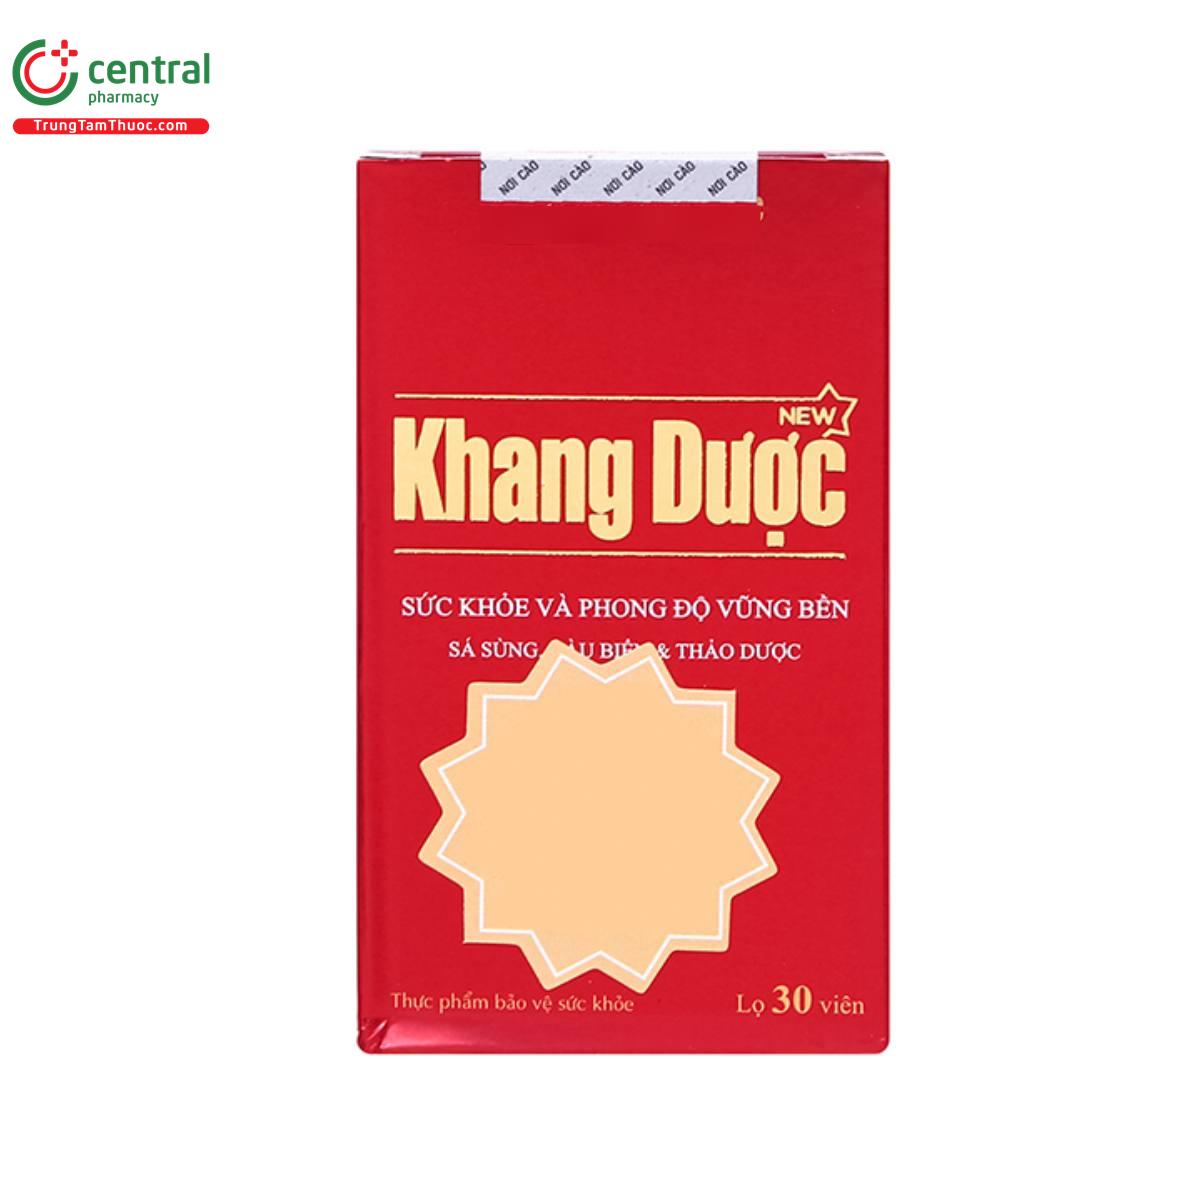 khang duoc new 3 N5015